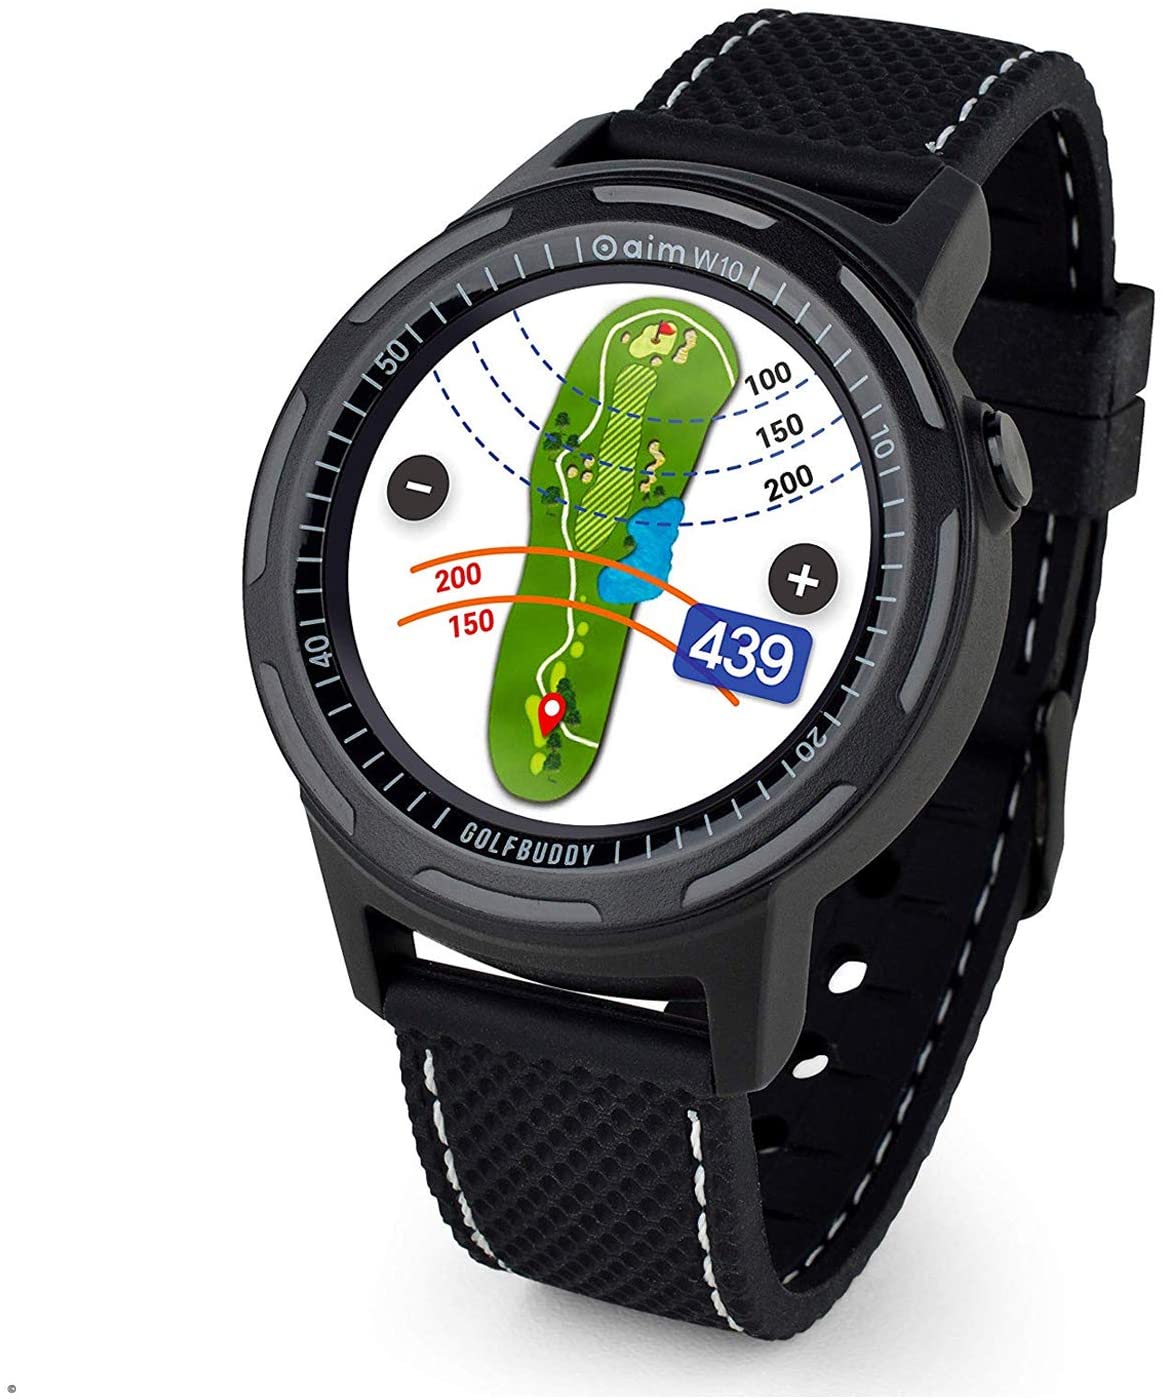 Golf Buddy Aim W10 Golf GPS Watch - Lambeg Golf Shop